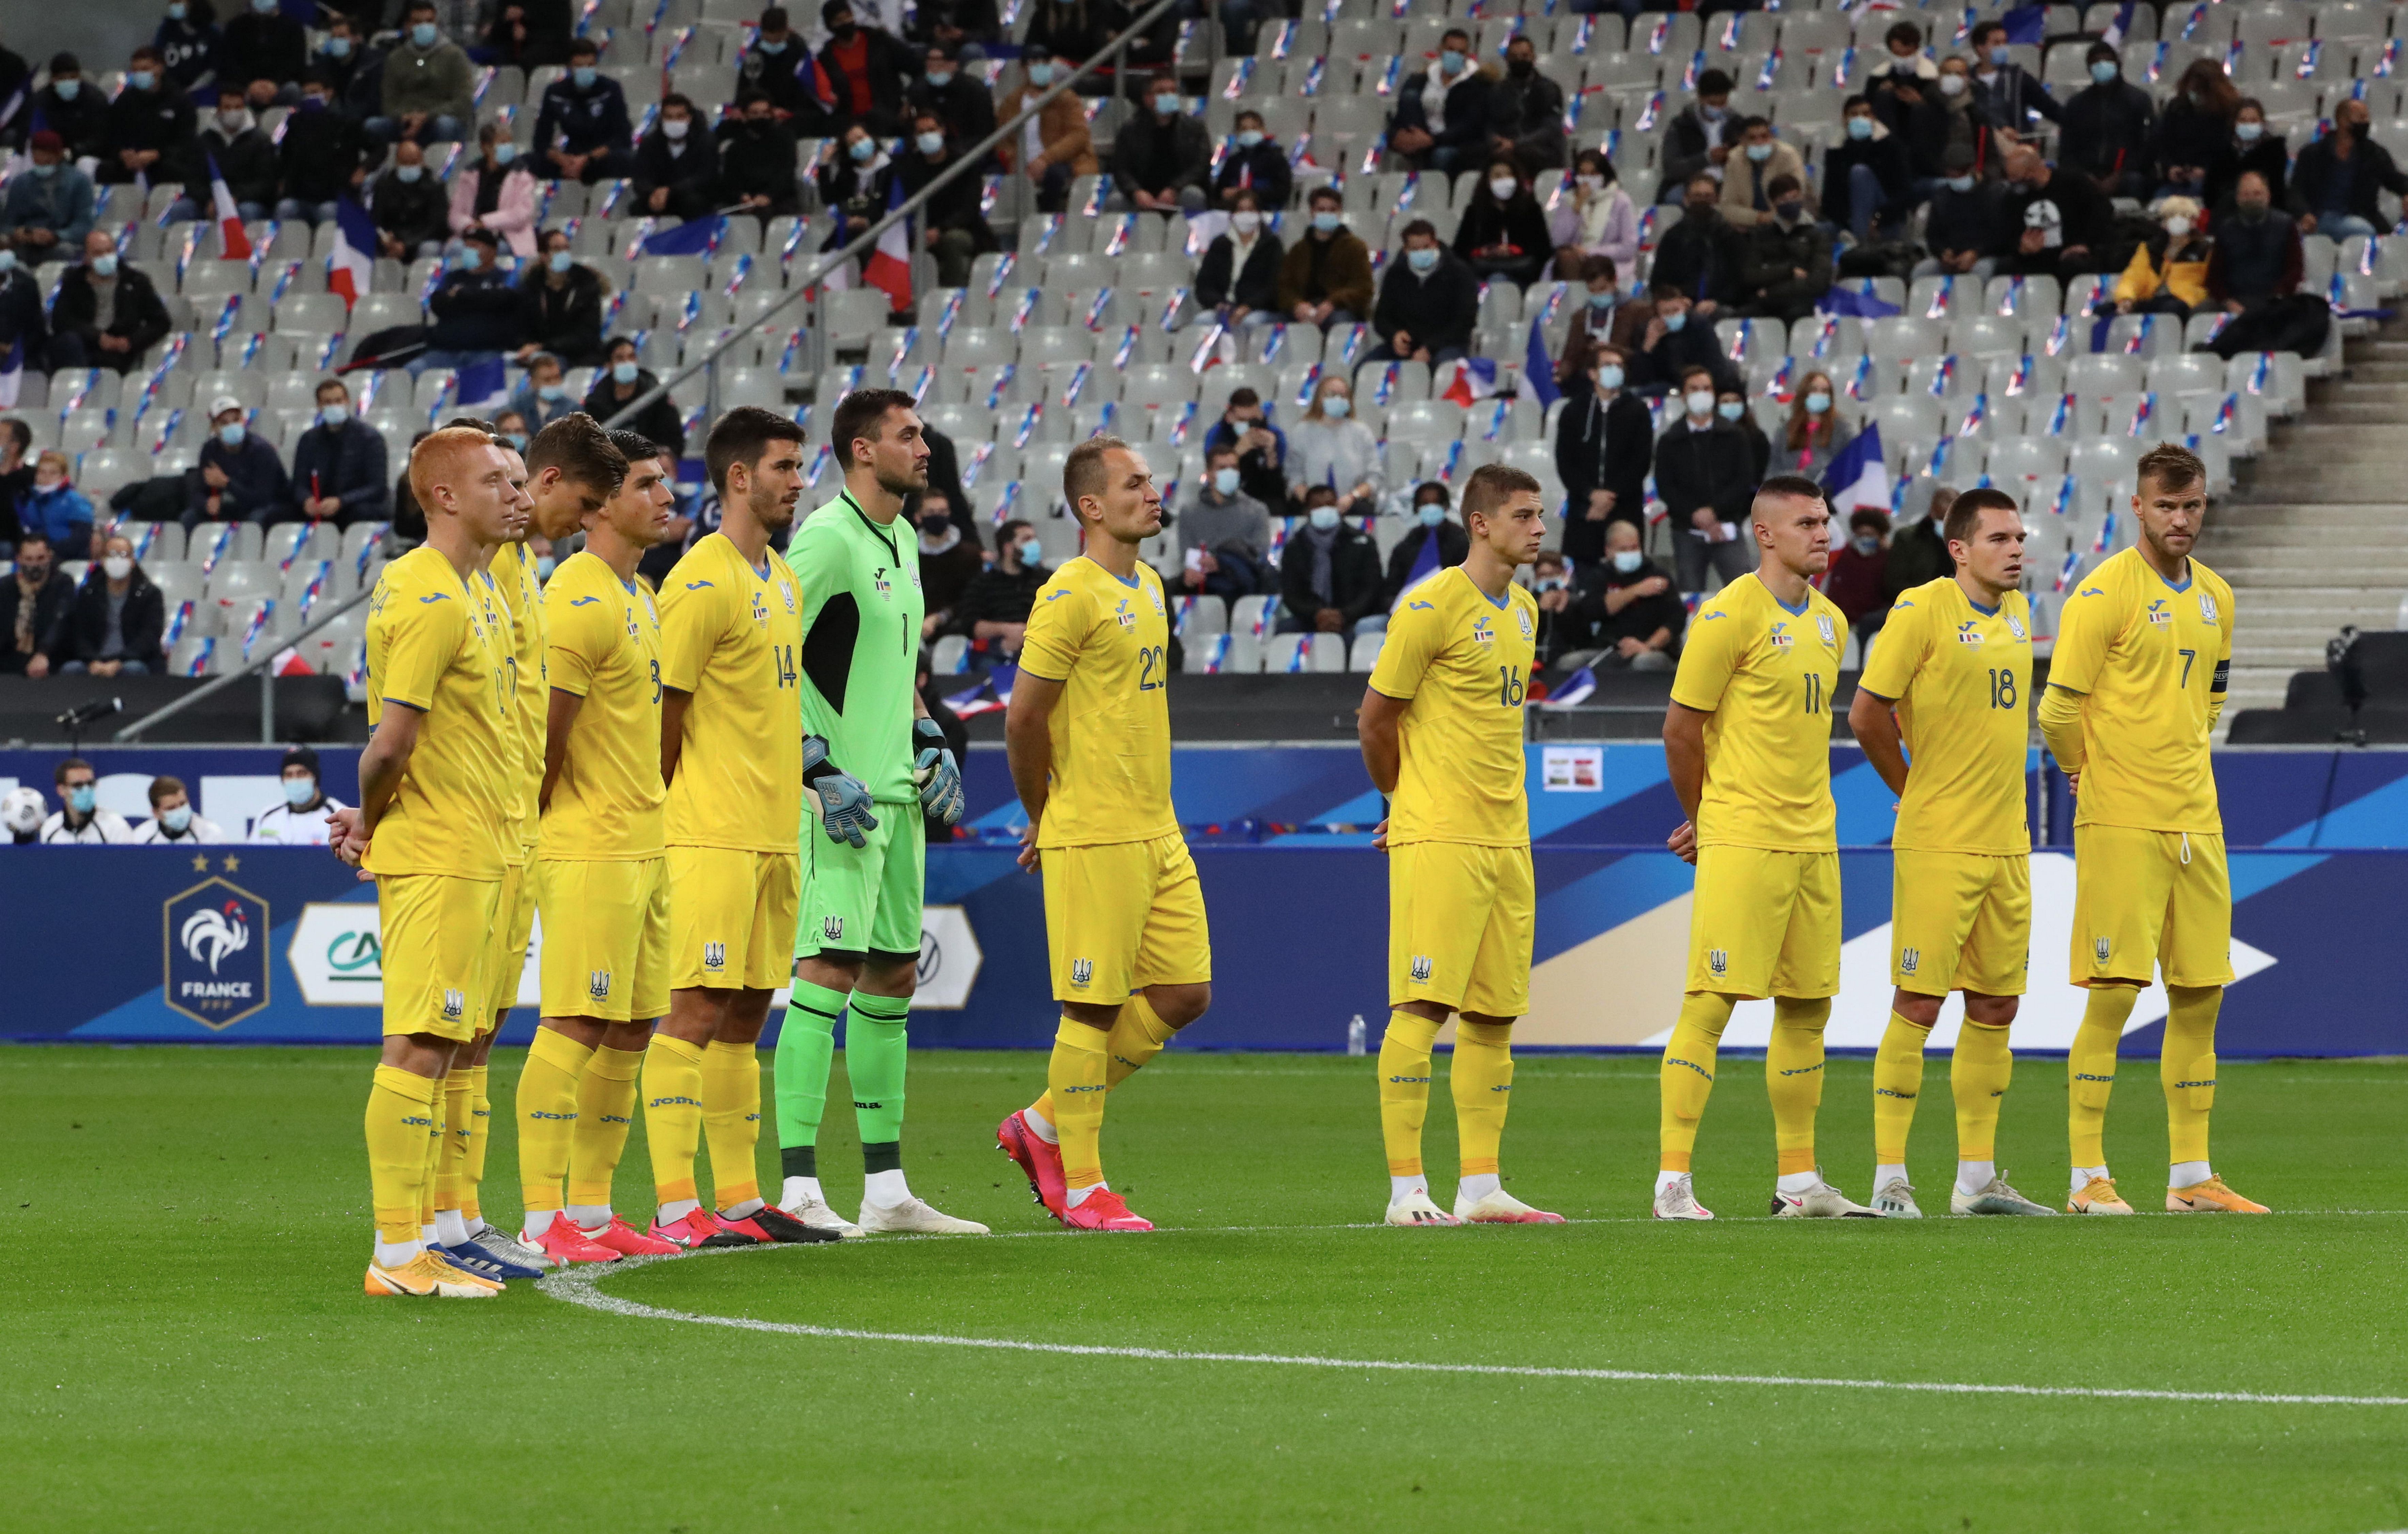 Матч Франция – Украина состоится без зрителей - 3 марта 2021 - Сборная